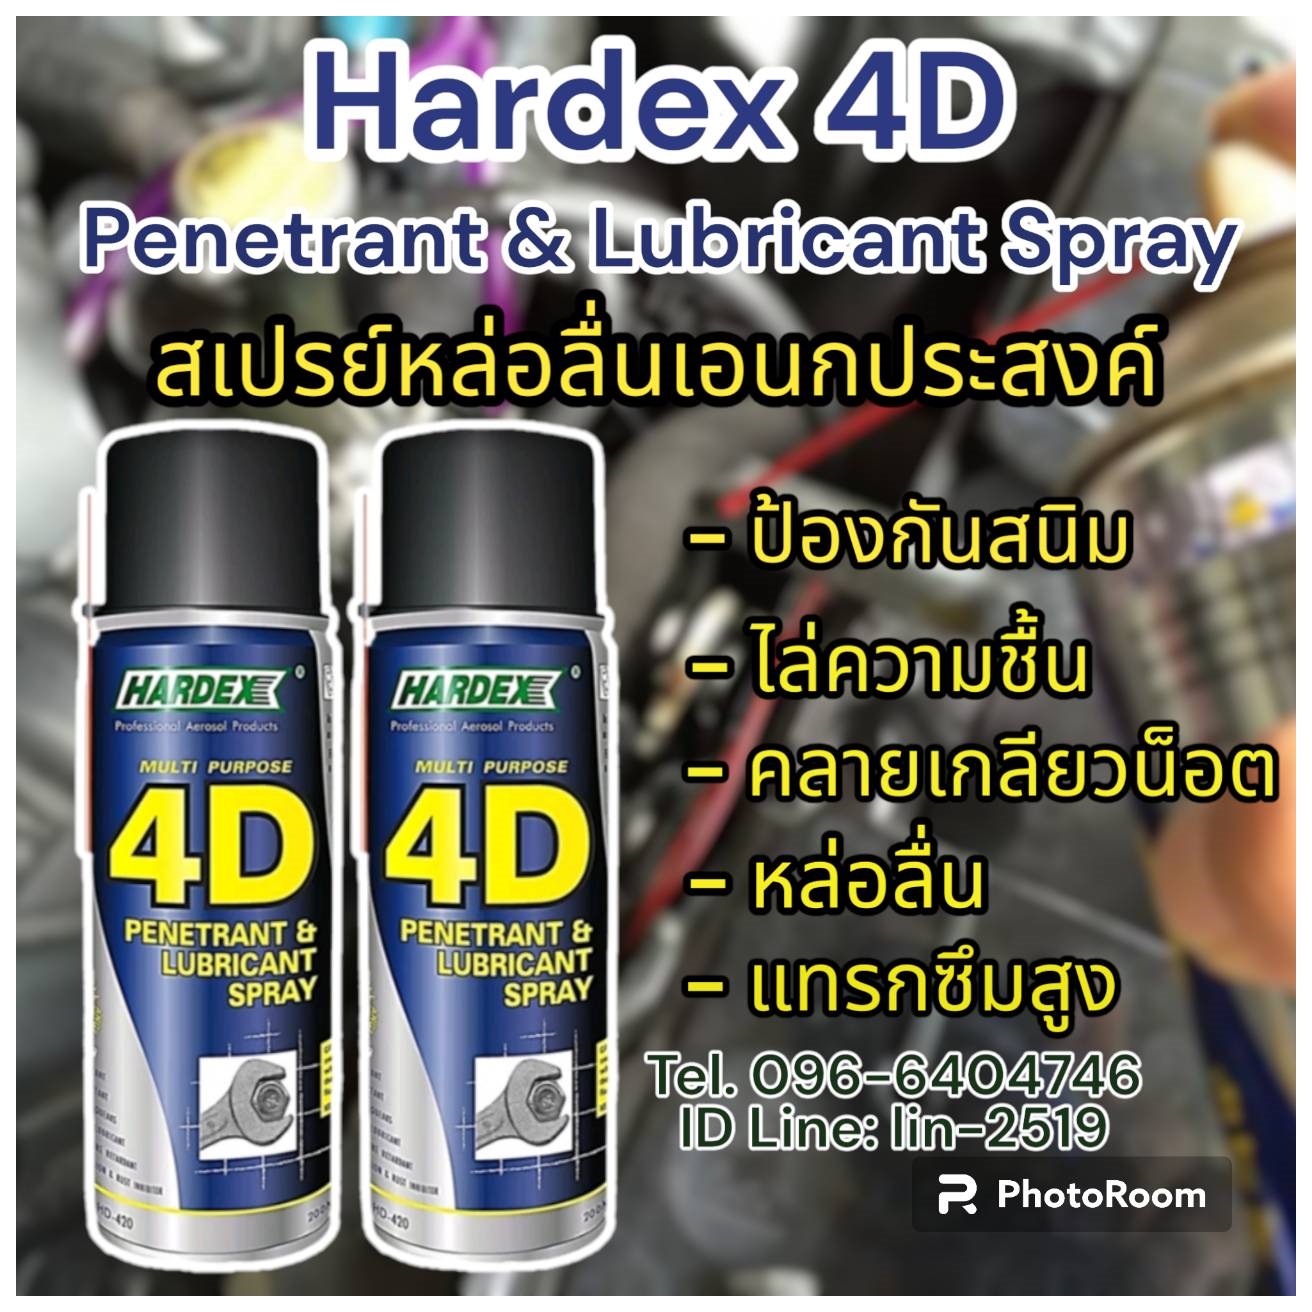 รูปภาพ Hardex 4D Penetrant &Lubricant Spray สเปรย์หล่อลื่นอเนกประสงค์คลายเกลียวน๊อตไล่ความชื้น ป้องกันความชื้น หล่อลื่นป้องกันสนิม